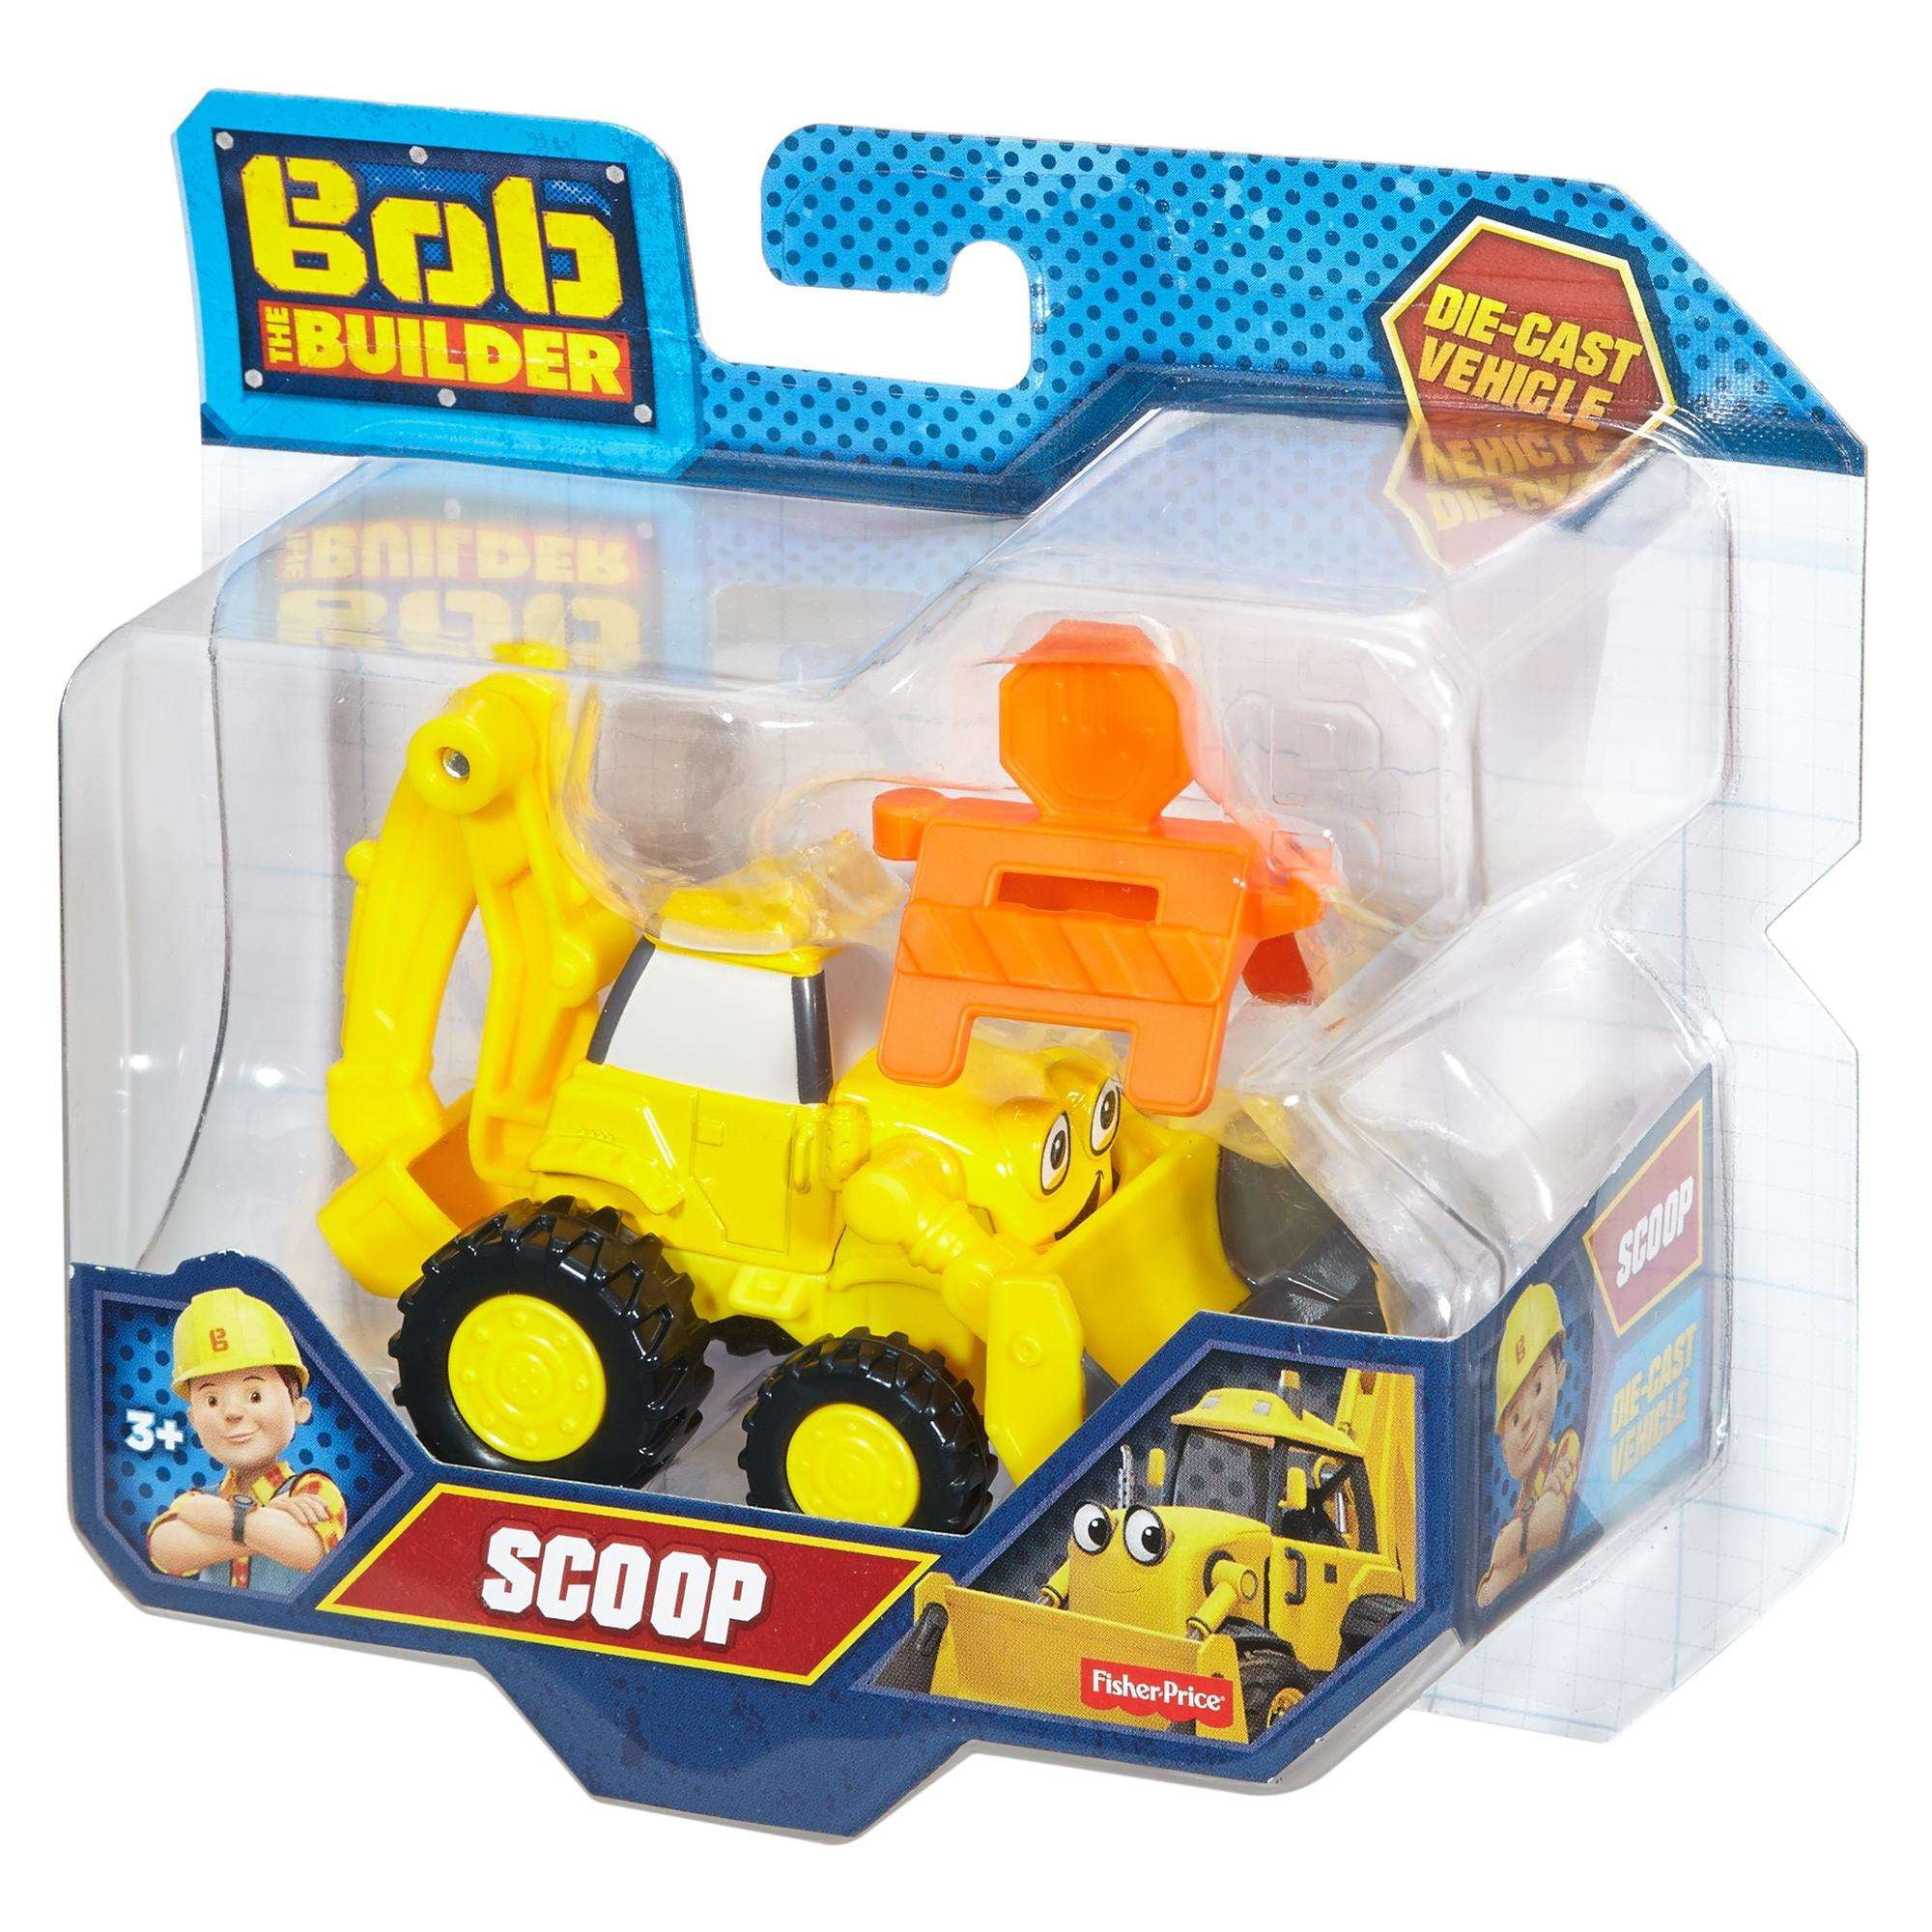 Bob the Builder Die-Cast Scoop 